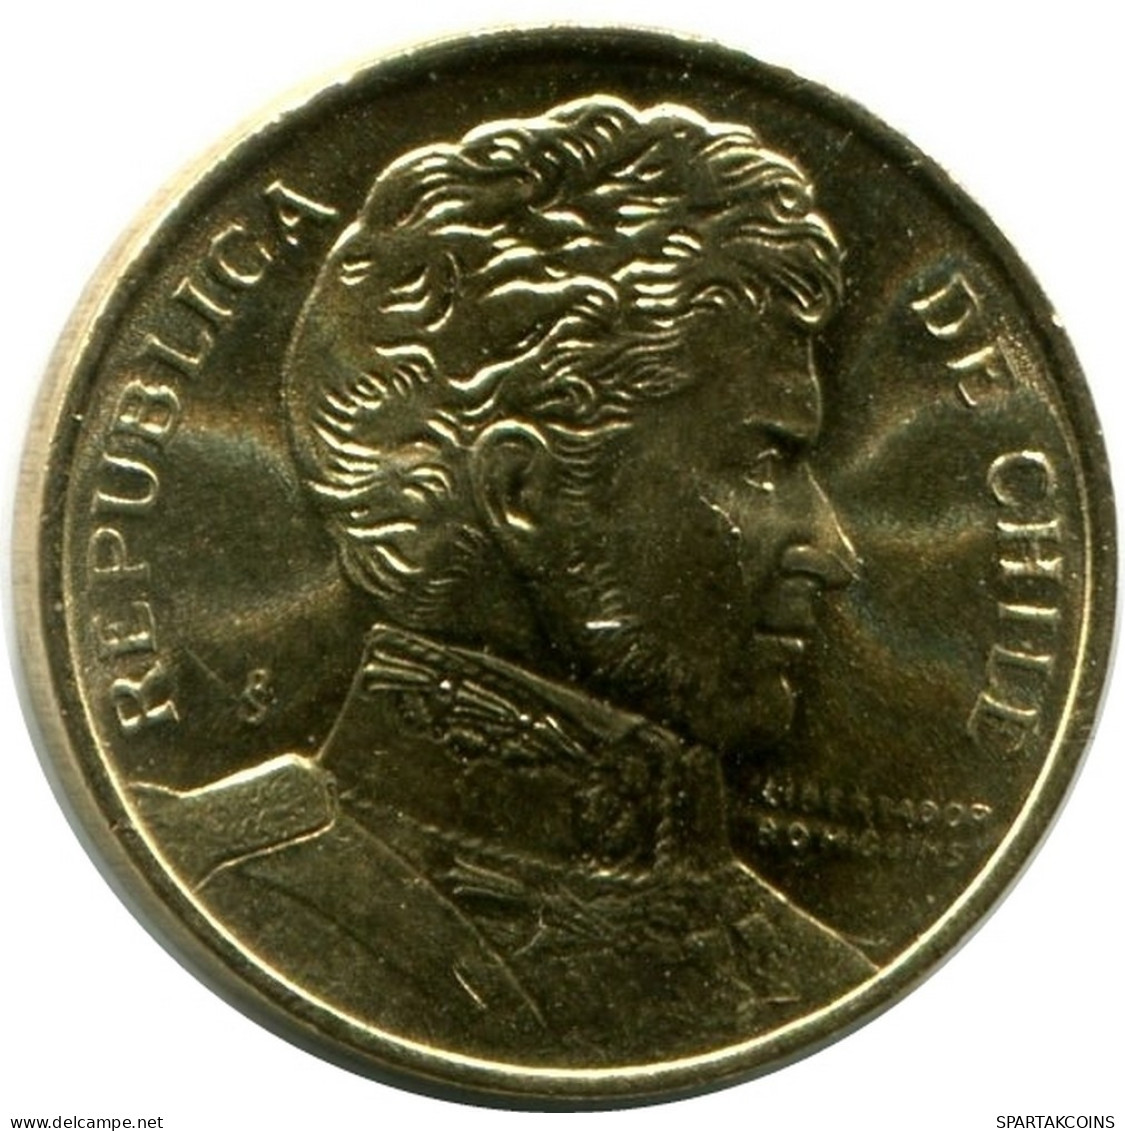 1 PESO 1990 CHILE UNC Moneda #M10141.E.A - Cile